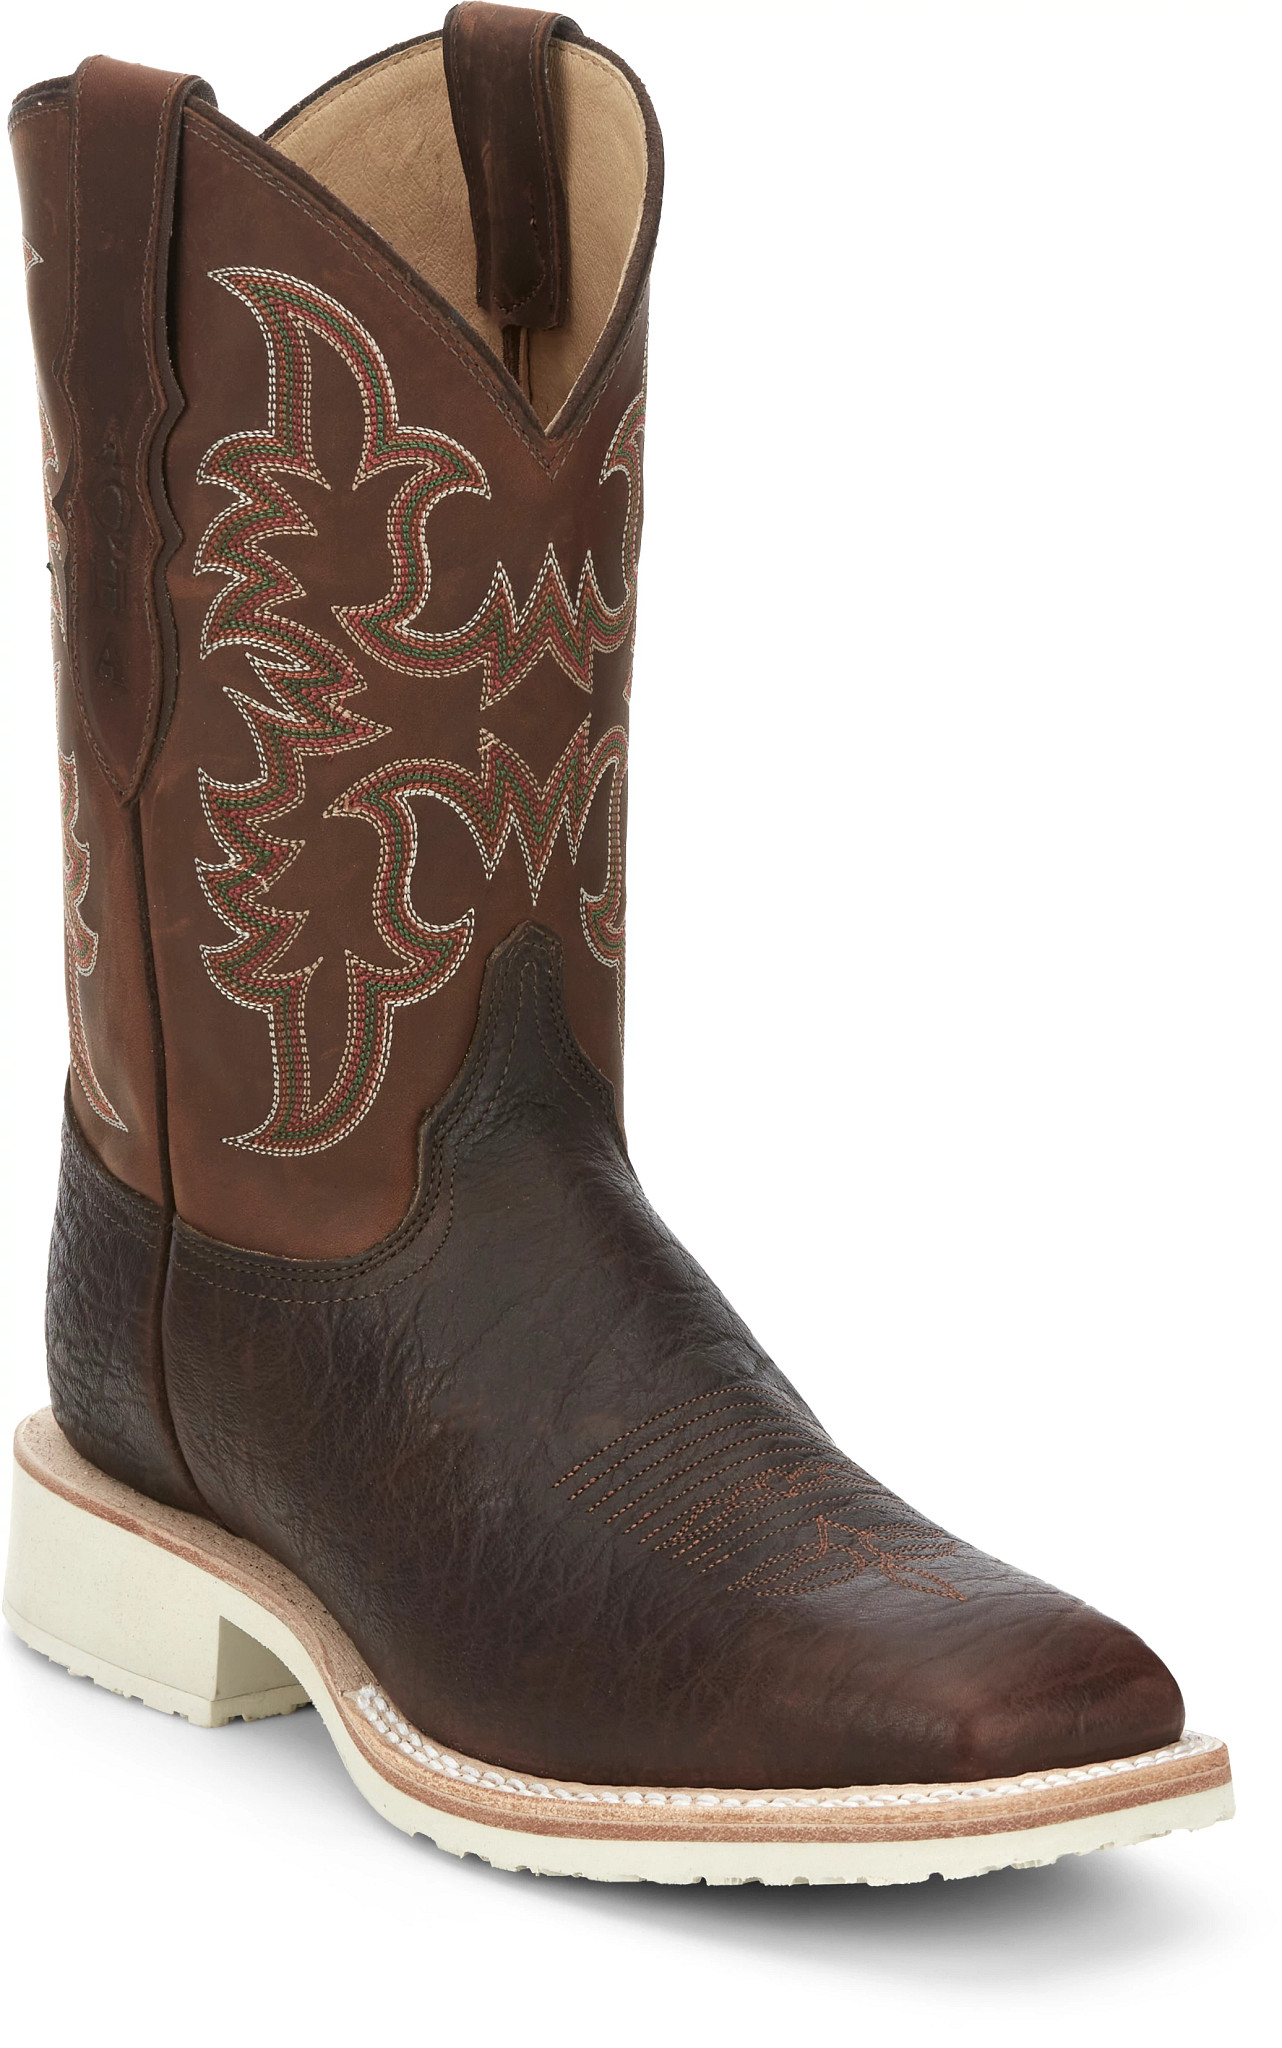 Schoenen Herenschoenen Laarzen Cowboy & Westernlaarzen Justin Vtg Exotic Leather 8527 Cowboy Boots Men’s 8d 